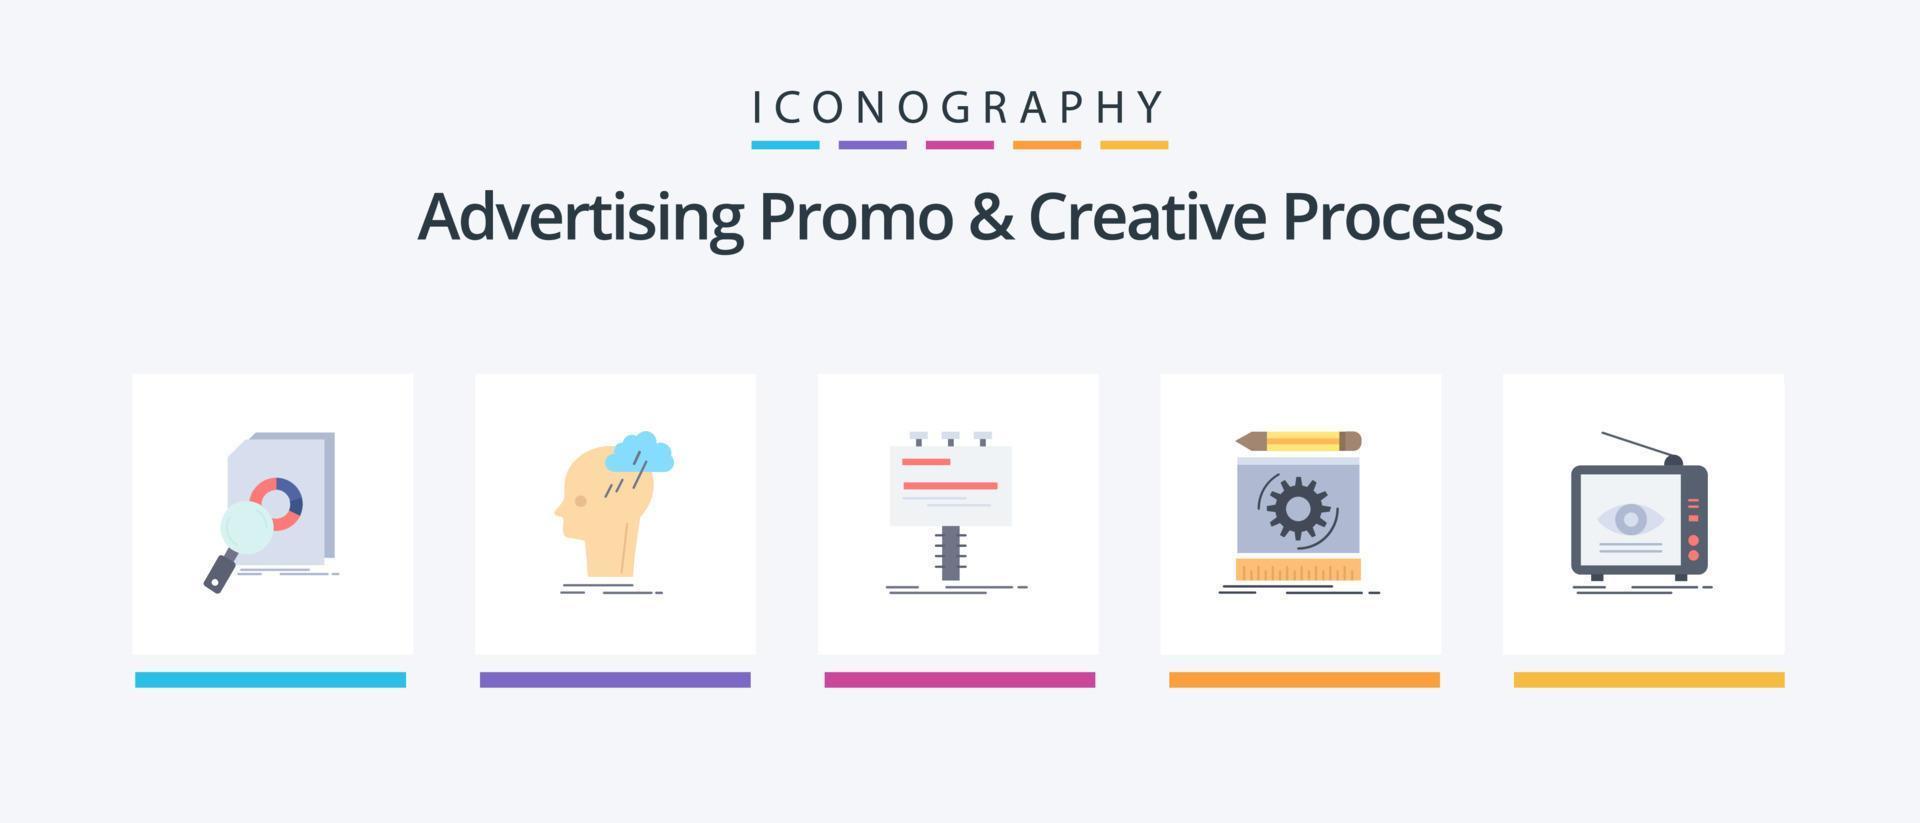 promotion publicitaire et pack d'icônes plat 5 de processus créatif, y compris le processus. ébauche. idée. promo. La publicité. conception d'icônes créatives vecteur